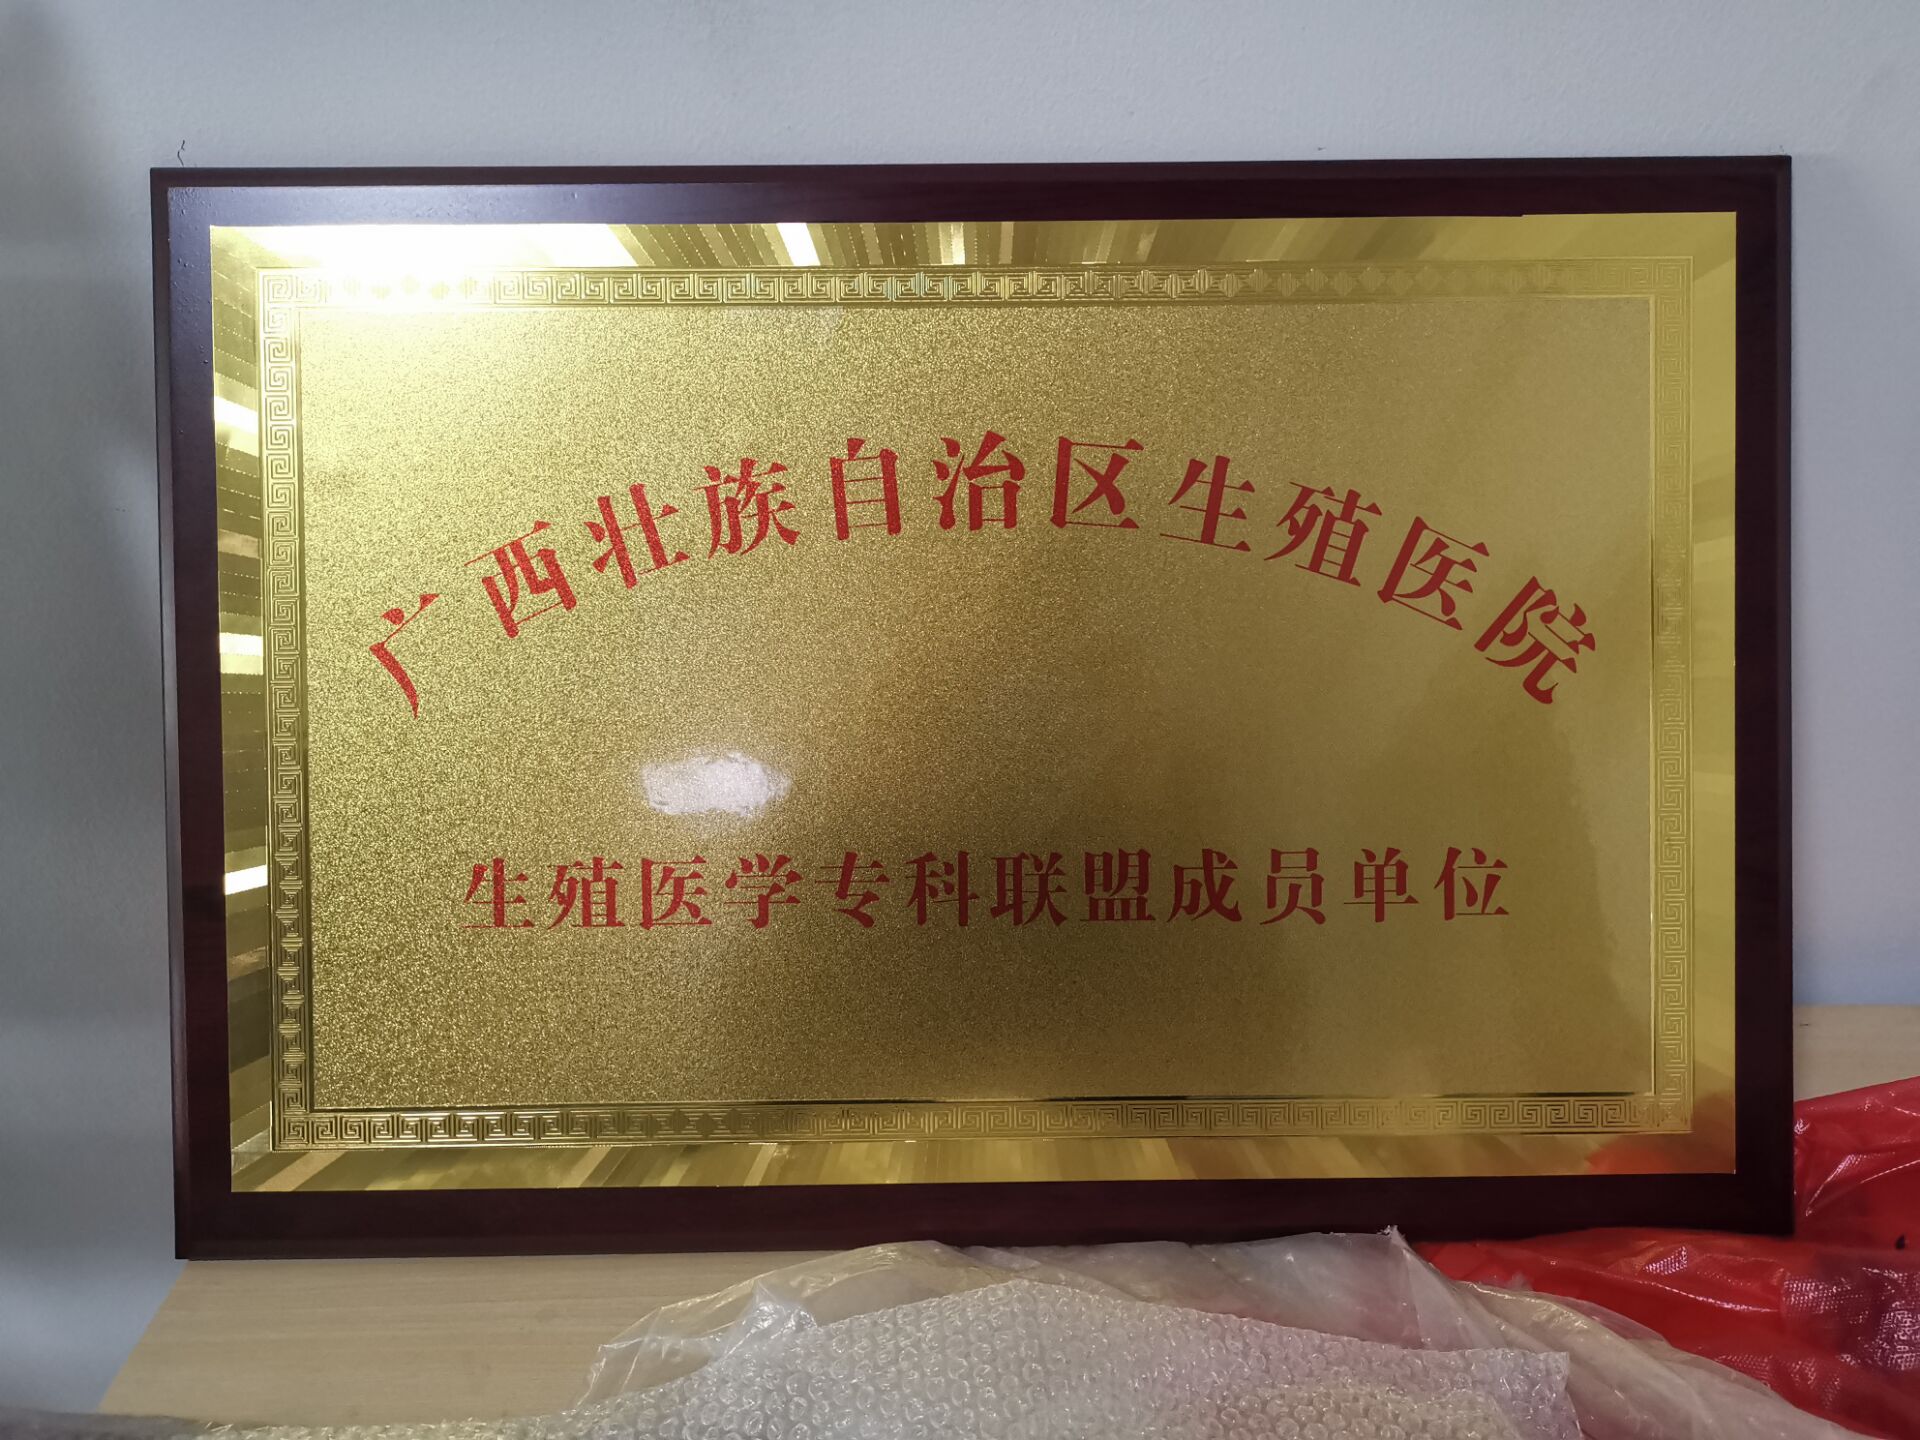 广西壮族自治区生殖医院金色牌匾制作